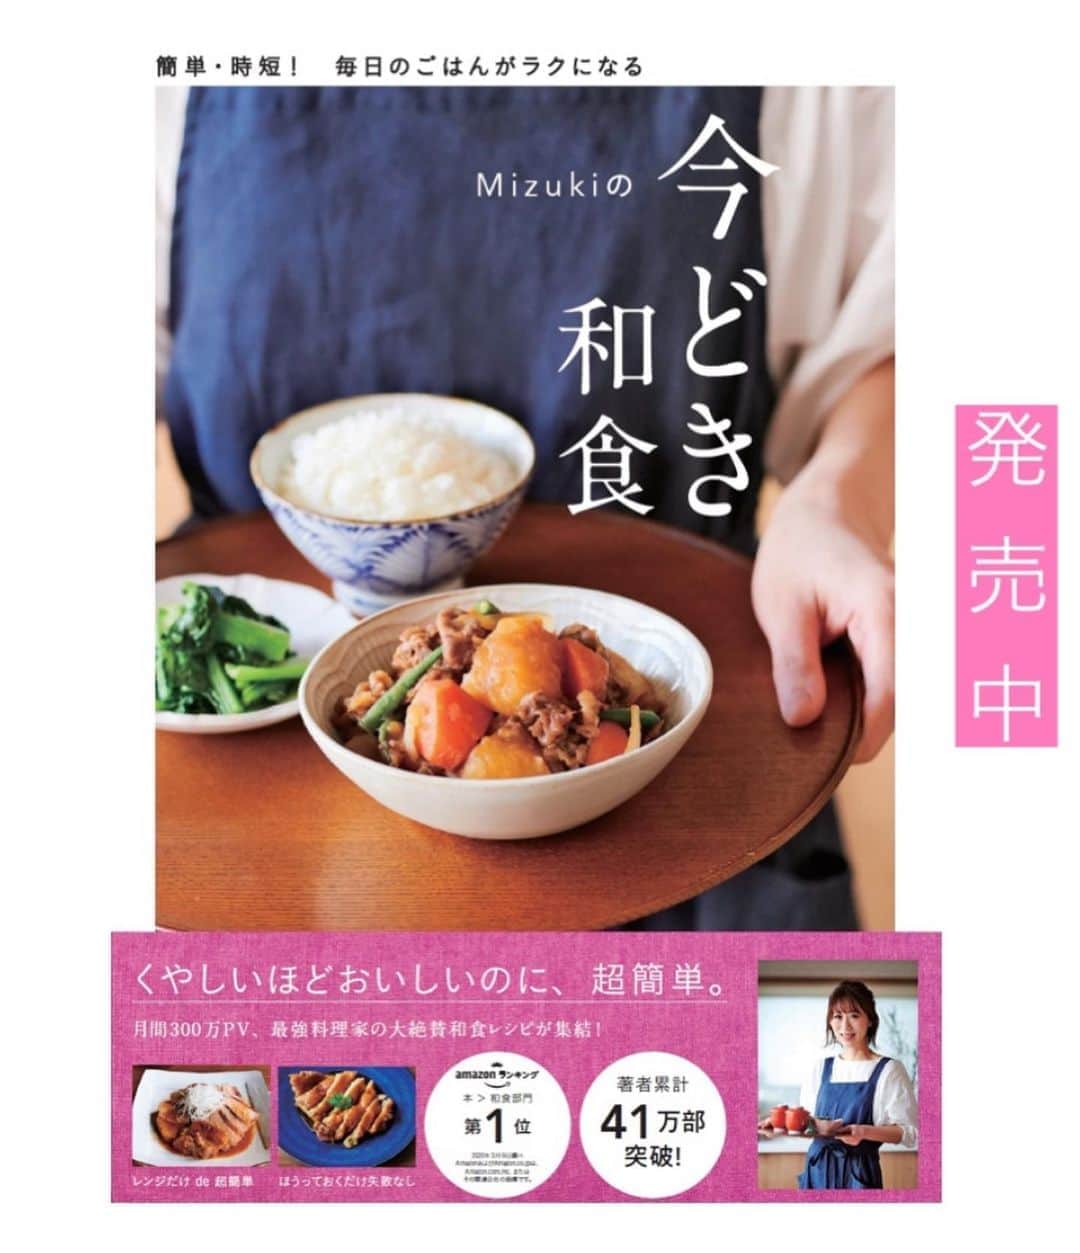 Mizuki【料理ブロガー・簡単レシピ】さんのインスタグラム写真 - (Mizuki【料理ブロガー・簡単レシピ】Instagram)「・﻿ 【レシピ】ーーーーーー﻿ ♡BBQ照りチキン♡﻿ ーーーーーーーーーーー﻿ ﻿ ﻿ ﻿ おはようございます(*^^*)﻿ ﻿ 今日ご紹介させていただくのは﻿ \\ BBQ照りチキン //﻿ こんがり焼いた鶏肉に﻿ ケチャップベースのソースを合わせて﻿ テリッテリに仕上げました(*´艸`)﻿ 甘めのBBQソースは﻿ きっとお子さんが好きな味ですよ〜♡﻿ ﻿ 付け合わせの玉ねぎソテーも含め﻿ フライパンひとつでできるので﻿ よかったらお試し下さいね(*^^*)﻿ ﻿ ﻿ ﻿ ーーーーーーーーーーーーーーーーーーーー﻿ 【2人分】﻿ 鶏もも肉...大1枚(300g)﻿ 塩こしょう...少々﻿ 薄力粉...適量﻿ 玉ねぎ...1個﻿ サラダ油...小2﻿ ●ケチャップ...大3﻿ ●中濃ソース・はちみつ...各大1﻿ (好みで)粗挽き黒こしょう...少々﻿ ﻿ 1.鶏肉は身の厚い部分を開き、塩こしょうを振って薄力粉をまぶす。玉ねぎは1cm厚さの輪切りにする。﻿ 2.フライパンにサラダ油小1を中火で熱し、玉ねぎを両面焼いて火を通し、器に盛る。﻿ 3.フライパンに残りのサラダ油を足して鶏肉を焼く。焼き色が付いたら裏返し、フタをして弱めの中火で5分蒸し焼きにする。火が通ったら●を加えて煮からめる。﻿ 4.3を食べやすい大きさに切って器に盛り、黒こしょうを振る。﻿ ーーーーーーーーーーーーーーーーーーーー﻿ ﻿ ﻿ ﻿ 《ポイント》﻿ ♦︎お好みで玉ねぎはなくてもOKです♩その場合は味が濃くなるので、葉物野菜と盛り合わせるのもおすすめ♩﻿ ♦︎鶏肉はしっかり焼き色をつけてから裏返して下さい♩﻿ ♦︎はちみつが入っているので1歳未満のお子さんには食べさせないように注意して下さい☆﻿ ﻿ ﻿ ﻿ ﻿ ﻿ ﻿ ﻿ ﻿ 🆕🆕🆕🆕🆕🆕🆕🆕🆕🆕﻿ おかげさまで［今どき和食］が﻿ 8刷重版となりました(涙)﻿ 本当にありがとうございます！！﻿ 皆さんのおかげです（ ; ; ）💕﻿ 🆕🆕🆕🆕🆕🆕🆕🆕🆕🆕﻿ ↓ ↓ ↓﻿ ＿＿＿＿＿＿＿＿＿＿＿＿＿＿＿＿＿＿＿﻿ 📕8刷重版しました📕﻿ 簡単・時短！ 毎日のごはんがラクになる﻿ ✨🦋 【 #Mizukiの今どき和食 】🦋✨﻿ ＿＿＿＿＿＿＿＿＿＿＿＿＿＿＿＿＿＿＿﻿ なるべく少ない材料で﻿ 手間も時間も省きながら﻿ 簡単にできるおいしい和食レシピ♩﻿ 簡単に失敗なくマスターできる一冊で﻿ もっと気軽に、カジュアルに﻿ 和食を楽しんで下さいね(*^^*)﻿ ＿＿＿＿＿＿＿＿＿＿＿＿＿＿＿＿＿＿＿﻿ ﻿ ﻿ ﻿ ＿＿＿＿＿＿＿＿＿＿＿＿＿＿＿＿＿＿＿﻿ 🎀6刷重版しました🎀﻿ 混ぜて焼くだけ。はじめてでも失敗しない！﻿ 【#ホットケーキミックスのお菓子 】﻿ ﻿ 一冊まるっとホケミスイーツ♩﻿ 普段のおやつから﻿ 特別な日にも使えるレシピを﻿ この一冊に詰め込みました(*^^*)﻿ ホットケーキミックスを使えば﻿ 簡単に本格的なお菓子が作れますよ♡﻿ ＿＿＿＿＿＿＿＿＿＿＿＿＿＿＿＿＿﻿ ﻿ ﻿ ﻿ ﻿ ￣￣￣￣￣￣￣￣￣￣￣￣￣￣￣￣￣￣﻿ レシピを作って下さった際や﻿ レシピ本についてのご投稿には﻿ タグ付け( @mizuki_31cafe )して﻿ お知らせいただけると嬉しいです😊💕﻿ ＿＿＿＿＿＿＿＿＿＿＿＿＿＿＿＿＿＿﻿ ﻿ ﻿ ﻿ ﻿ ﻿ #鶏肉#バーベキューチキン#BBQ#玉ねぎ﻿ #Mizuki#簡単レシピ#時短レシピ#節約レシピ#料理#レシピ#フーディーテーブル#マカロニメイト#おうちごはん#デリスタグラマー#料理好きな人と繋がりたい#食べ物#料理記録#おうちごはんlover#写真好きな人と繋がりたい#foodpic#cooking#recipe#lin_stagrammer#foodporn#yummy#BBQ照りチキンm」9月3日 6時59分 - mizuki_31cafe